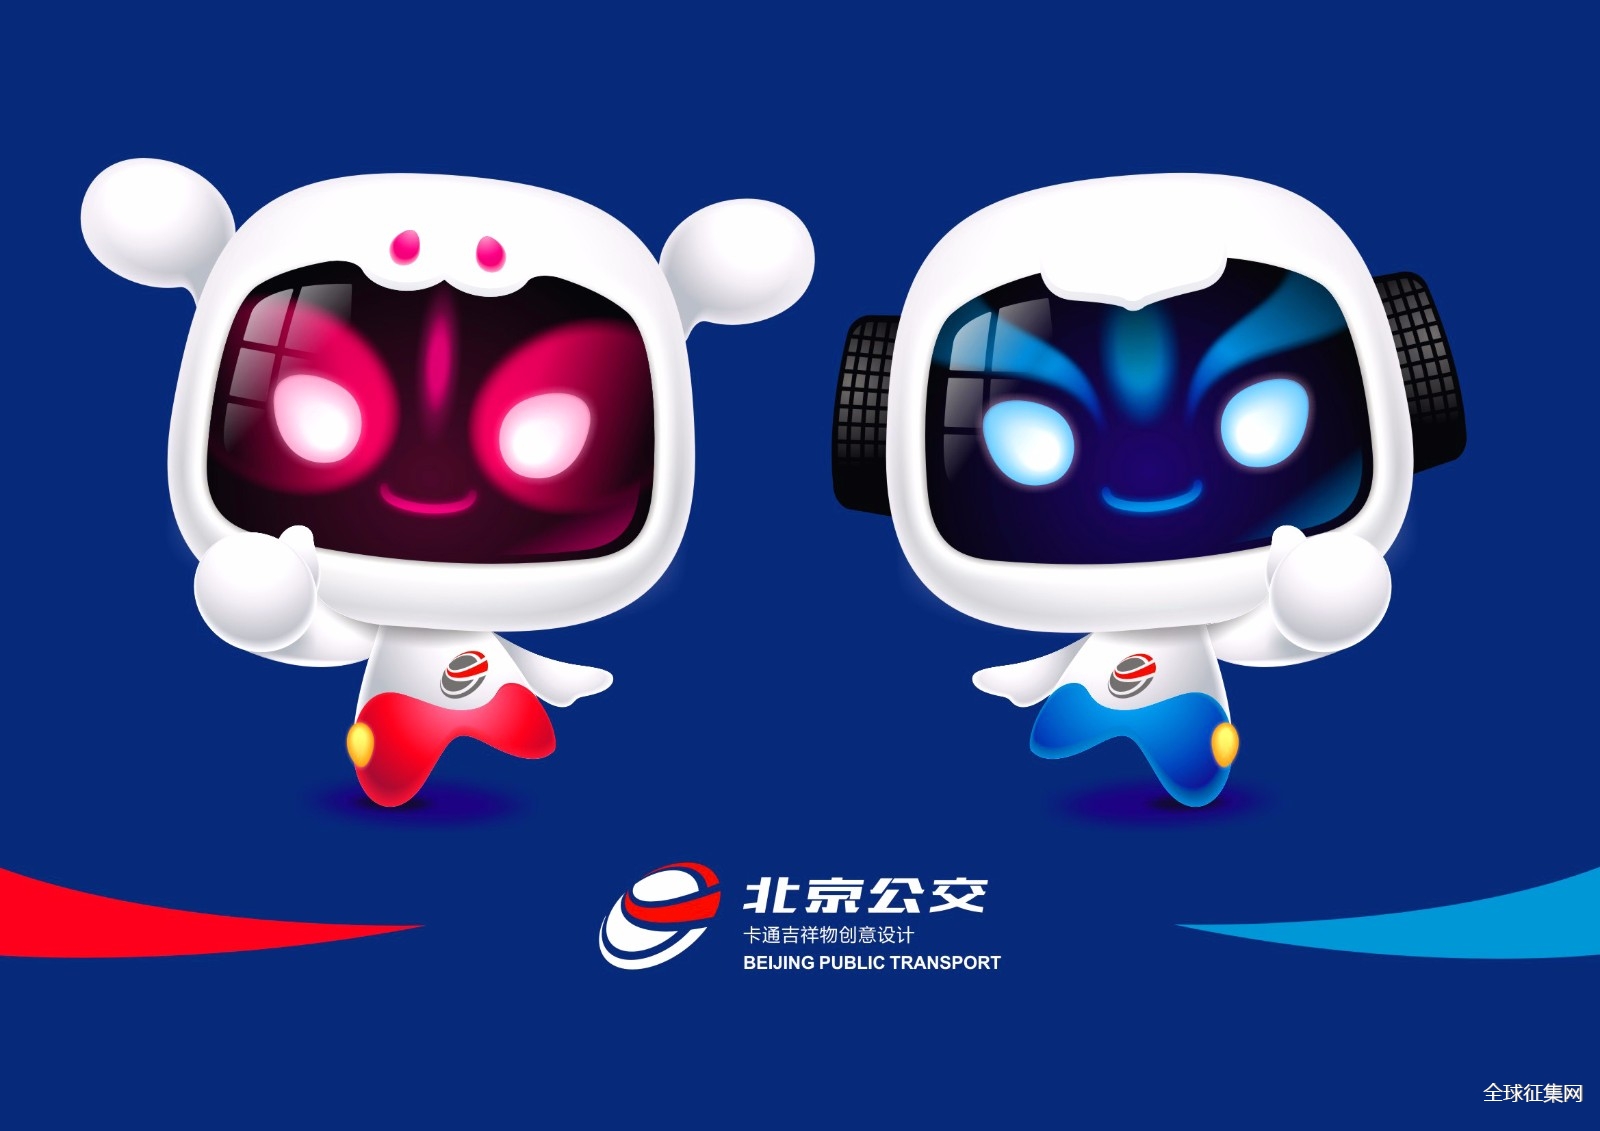 北京公交吉祥物创意设计大赛征集投票